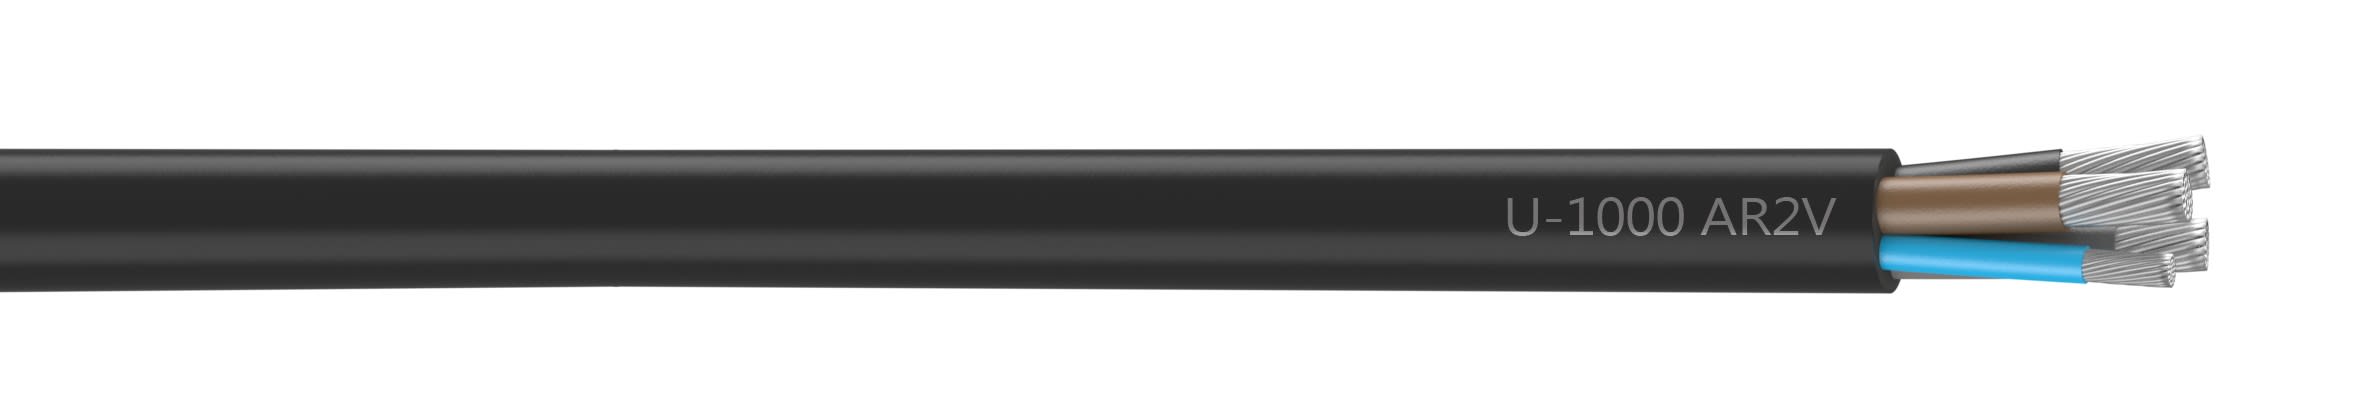 Nexans - Câble U-1000 AR2V aluminium 3x120+70 longueur à la coupe